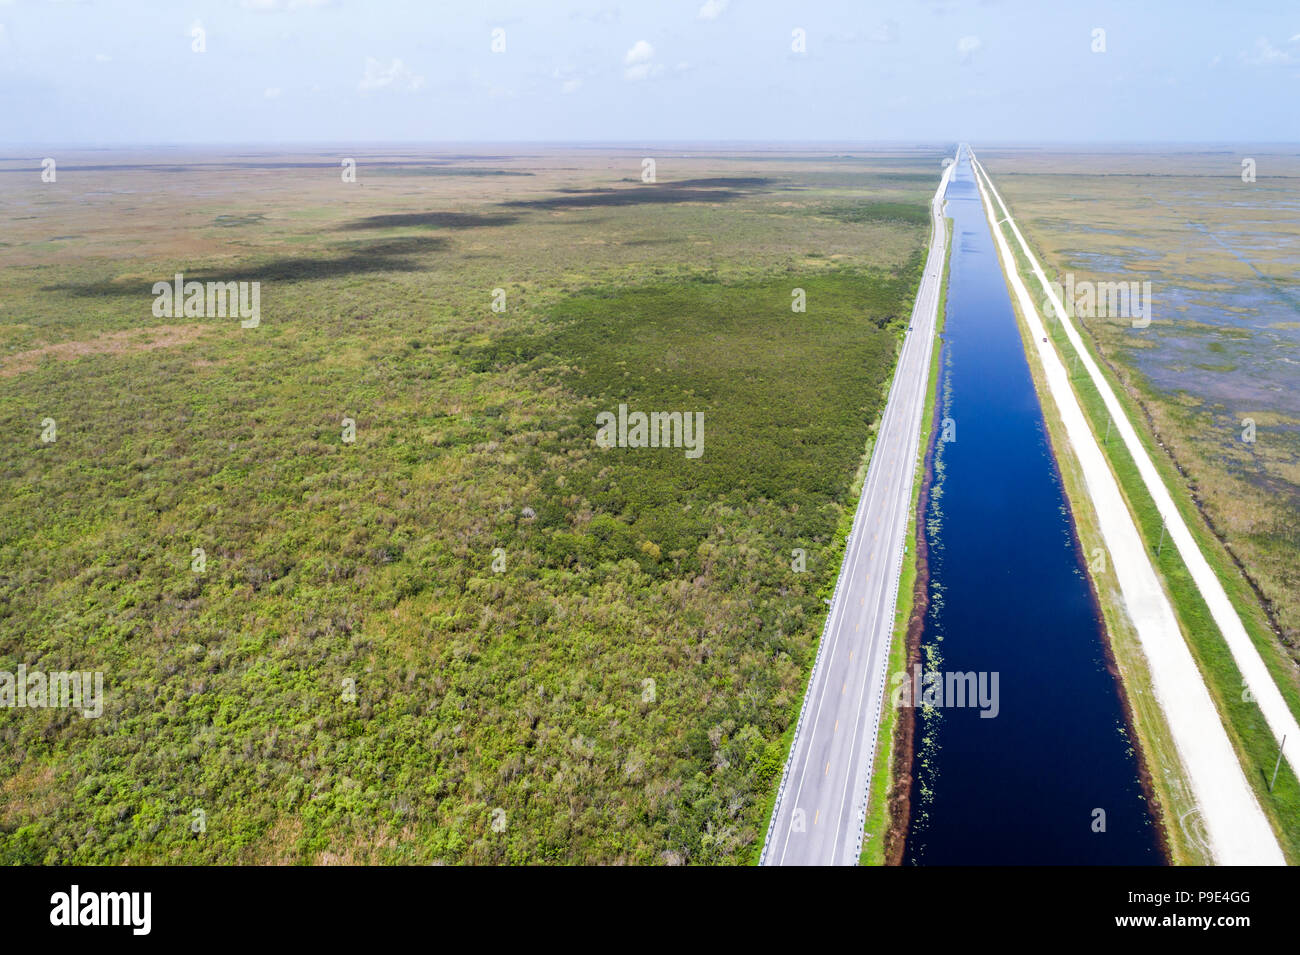 Miami Florida, Everglades National Park, Tamiami Trail US Route 41 autostrada, canale, levee, area di conservazione dell'acqua 3A, slough d'acqua dolce, vista aerea dall'alto Foto Stock